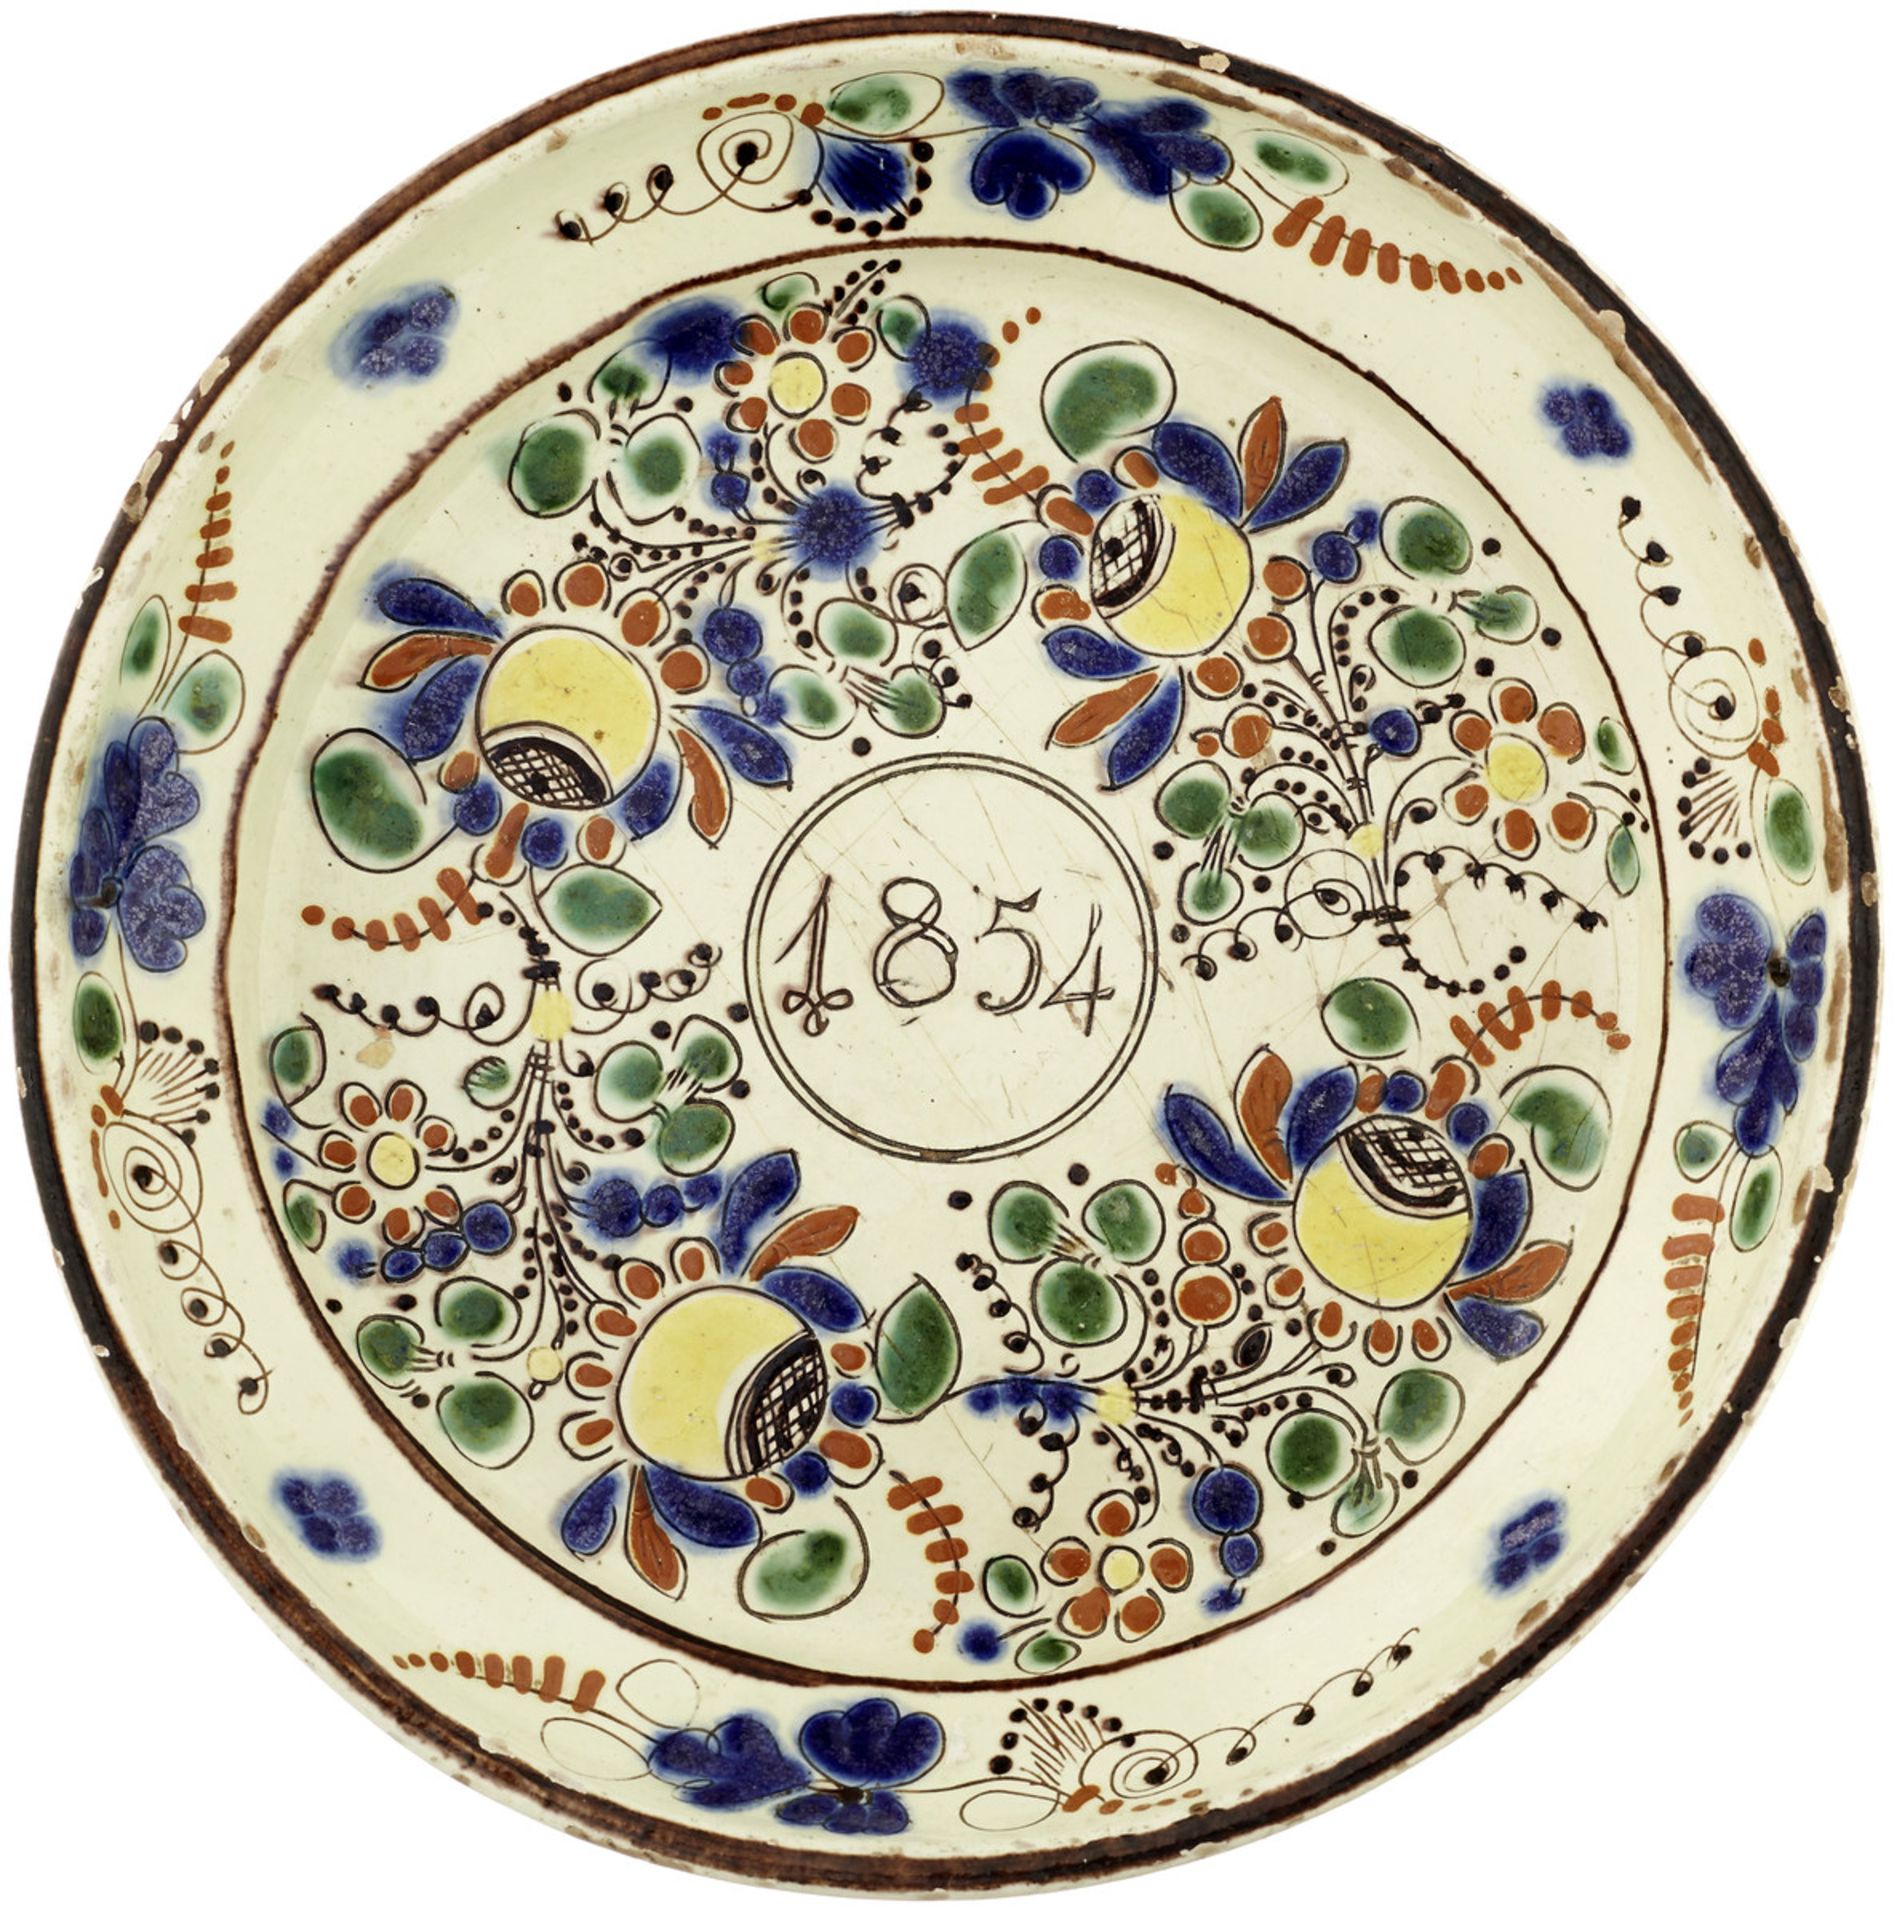 2 TellerHeimberg, Mitte 19. Jh. Cremefarben glasierte Keramik. Mehrfarbige, stilisierte - Bild 3 aus 4